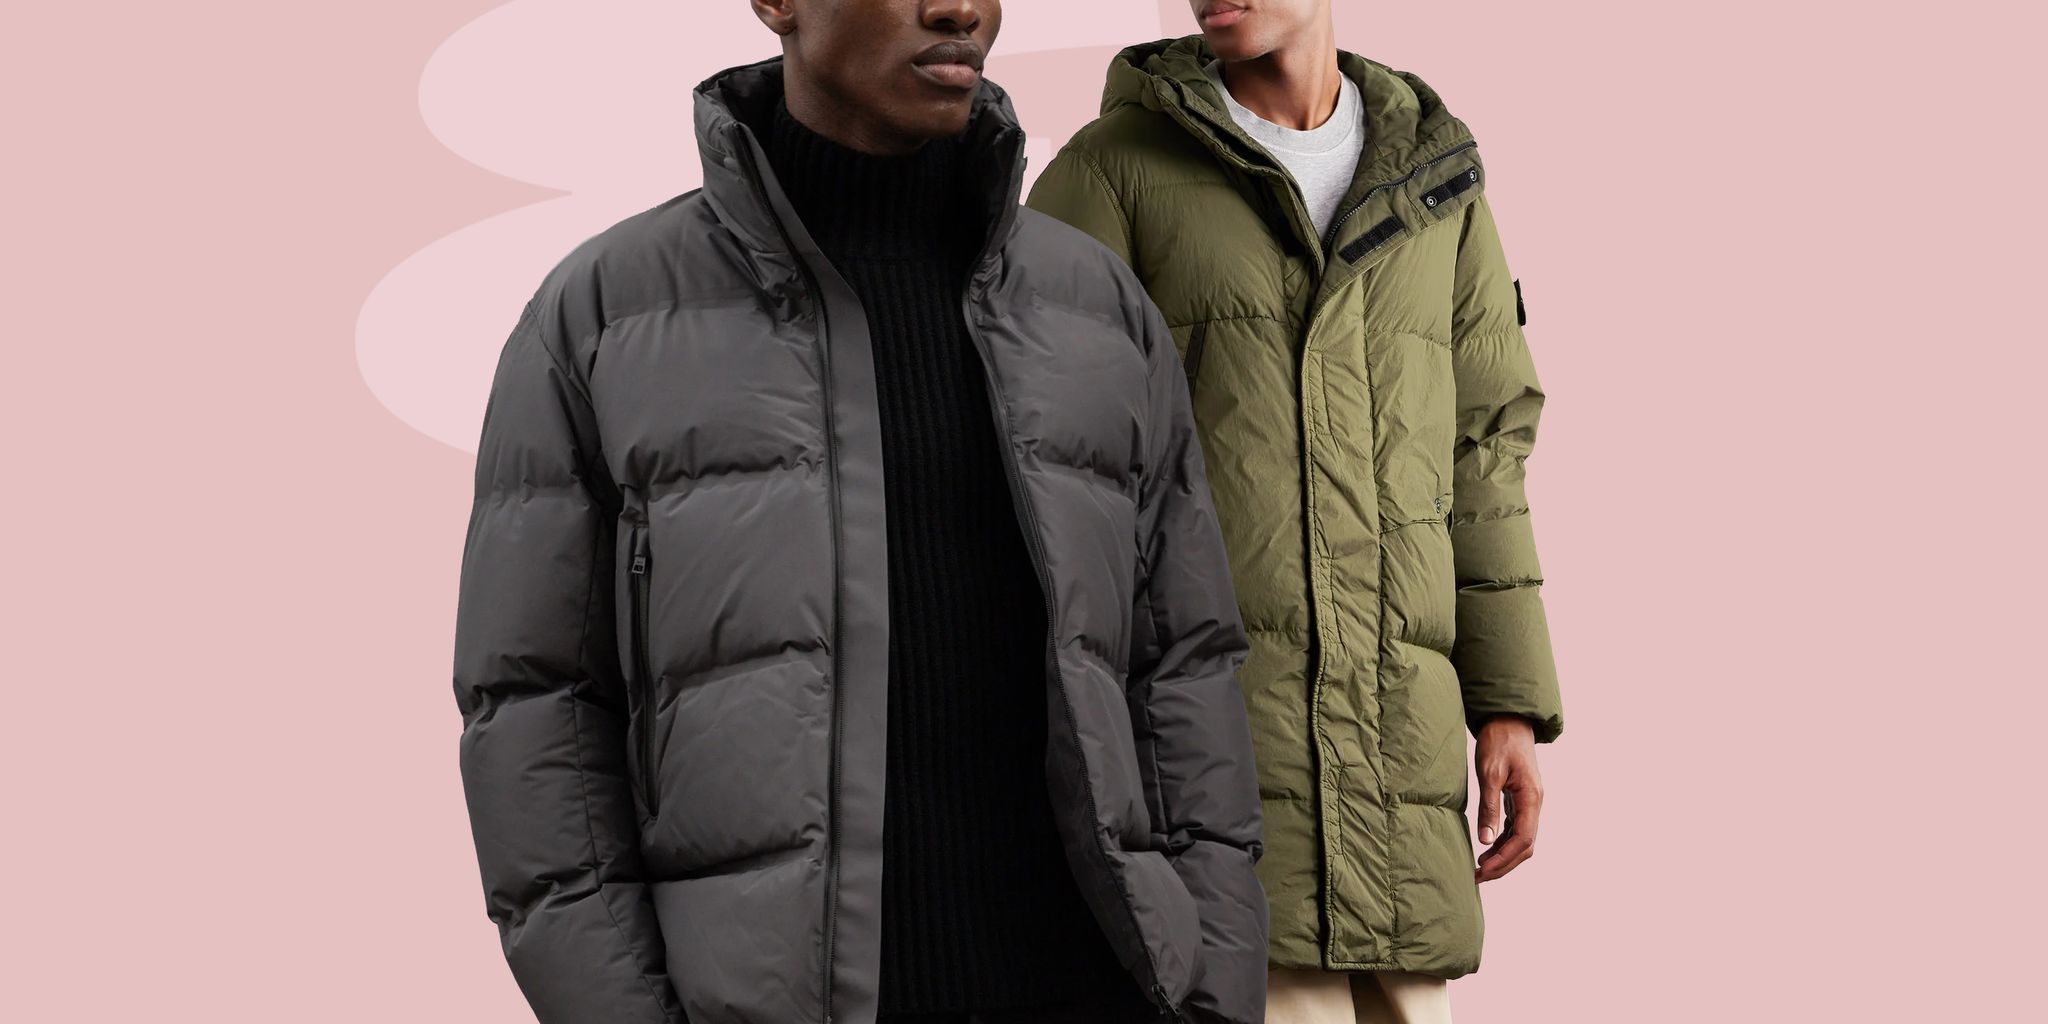 Men's Columbia Fleece Jackets  Best Price Guarantee at DICK'S